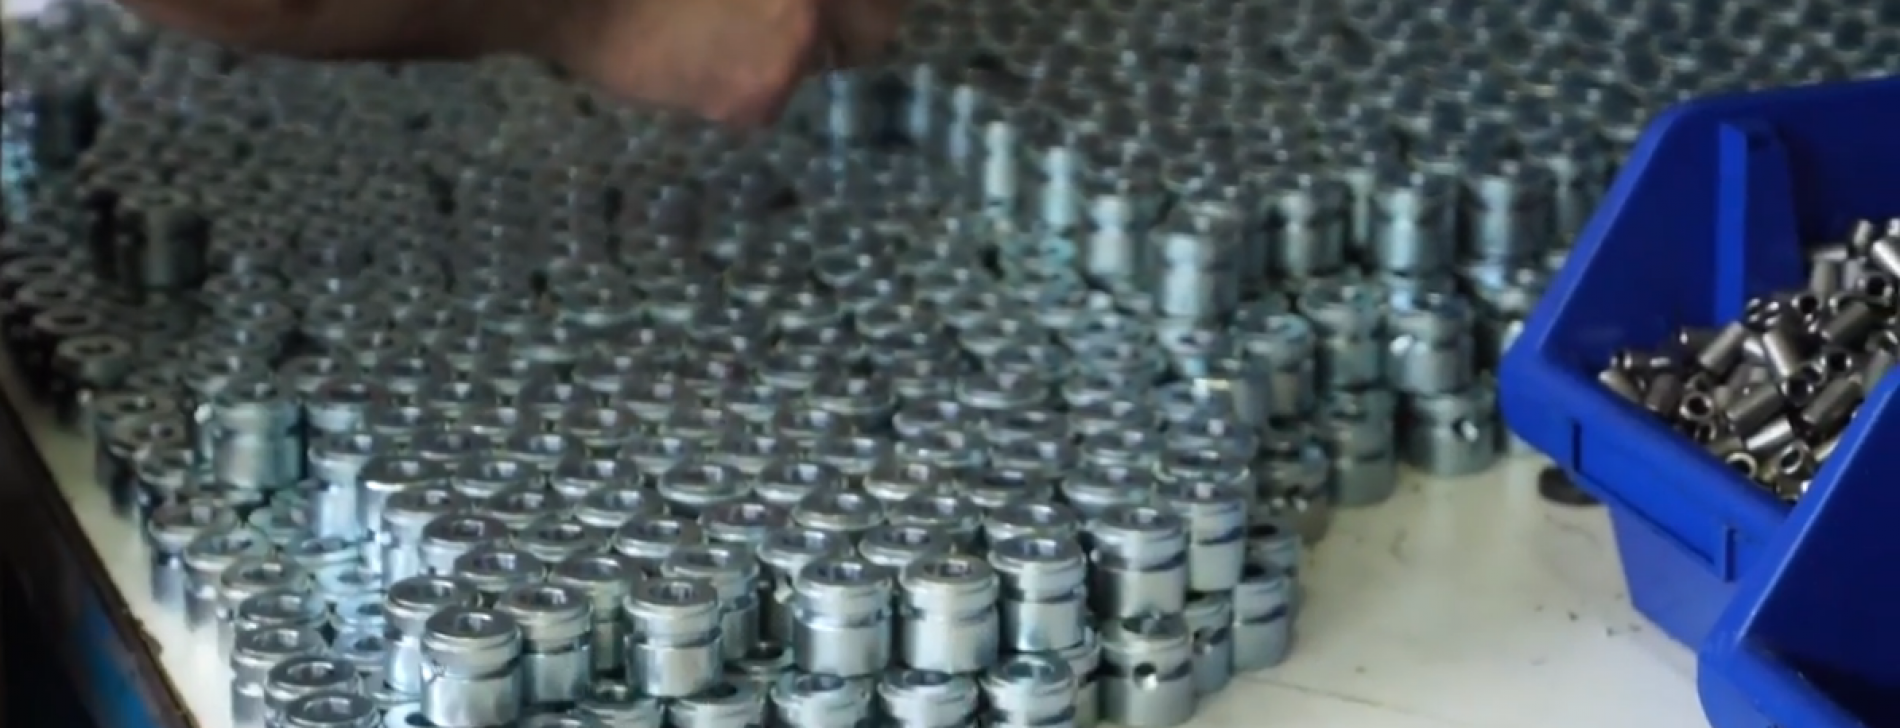 Mašinska obrada metala u ekspanziji, proizvođači imaju garantovano tržište  (VIDEO)